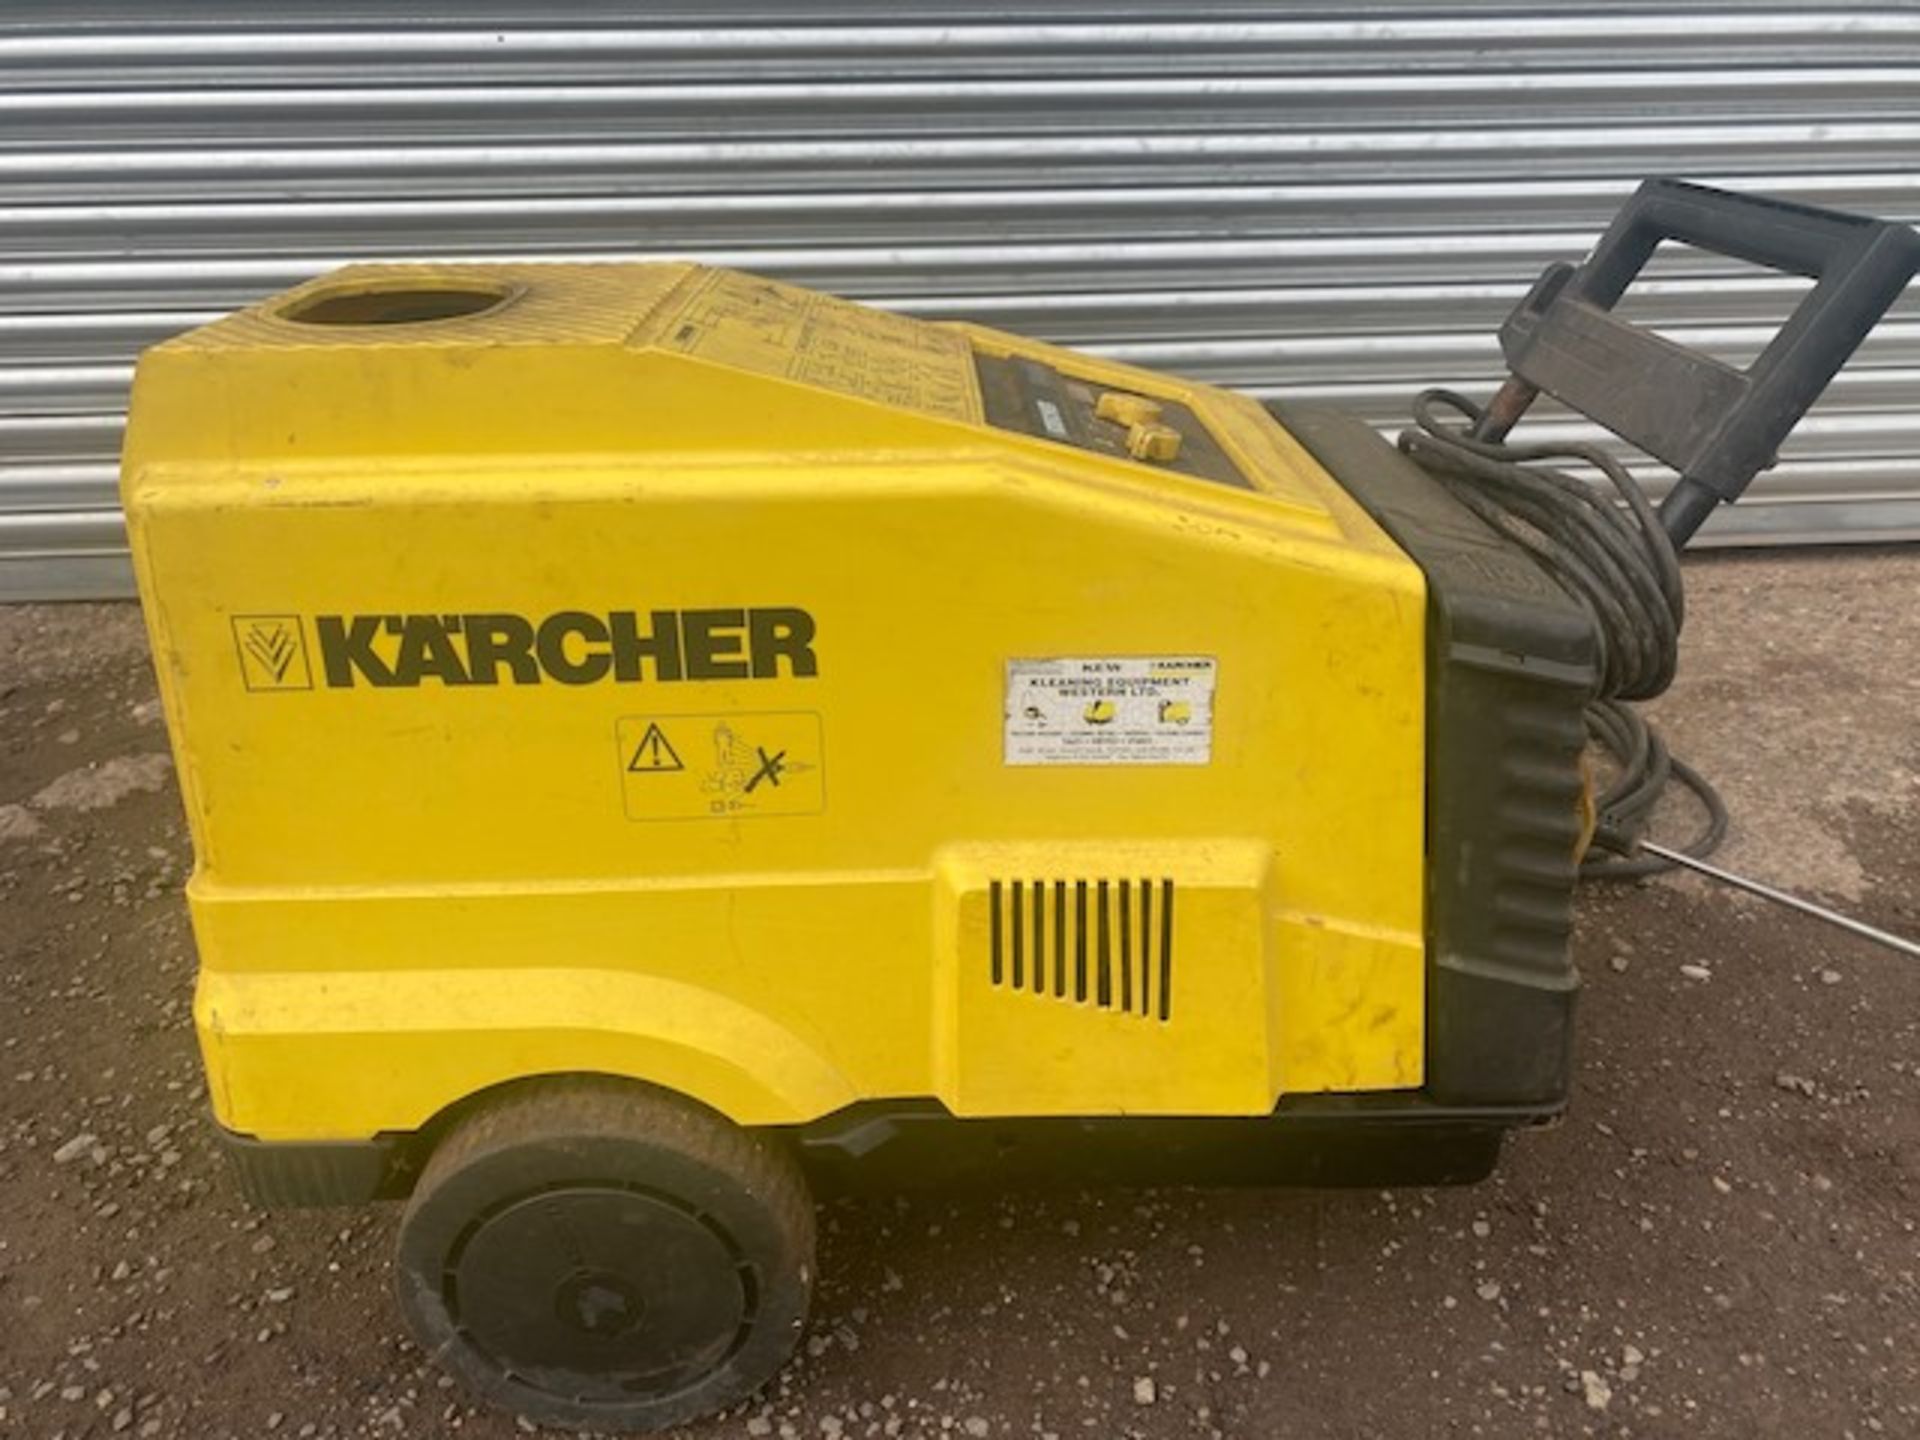 Karcher 550c Hot & Cold Pressure Washer